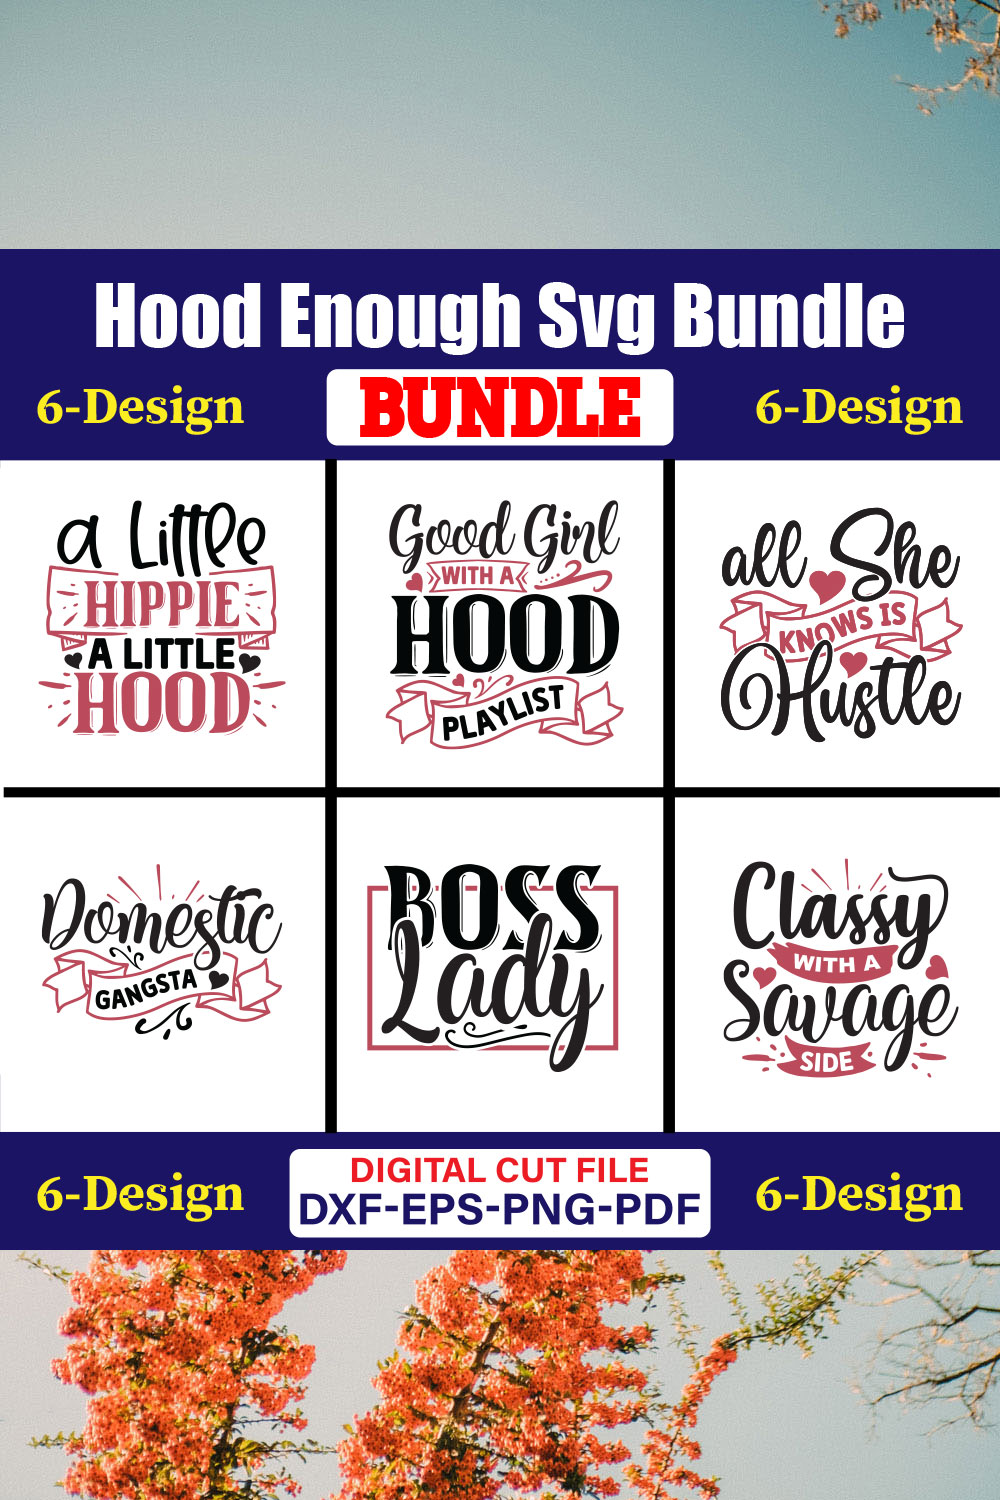 Hood Enough SVG T-shirt Design Bundle Vol-01 pinterest preview image.